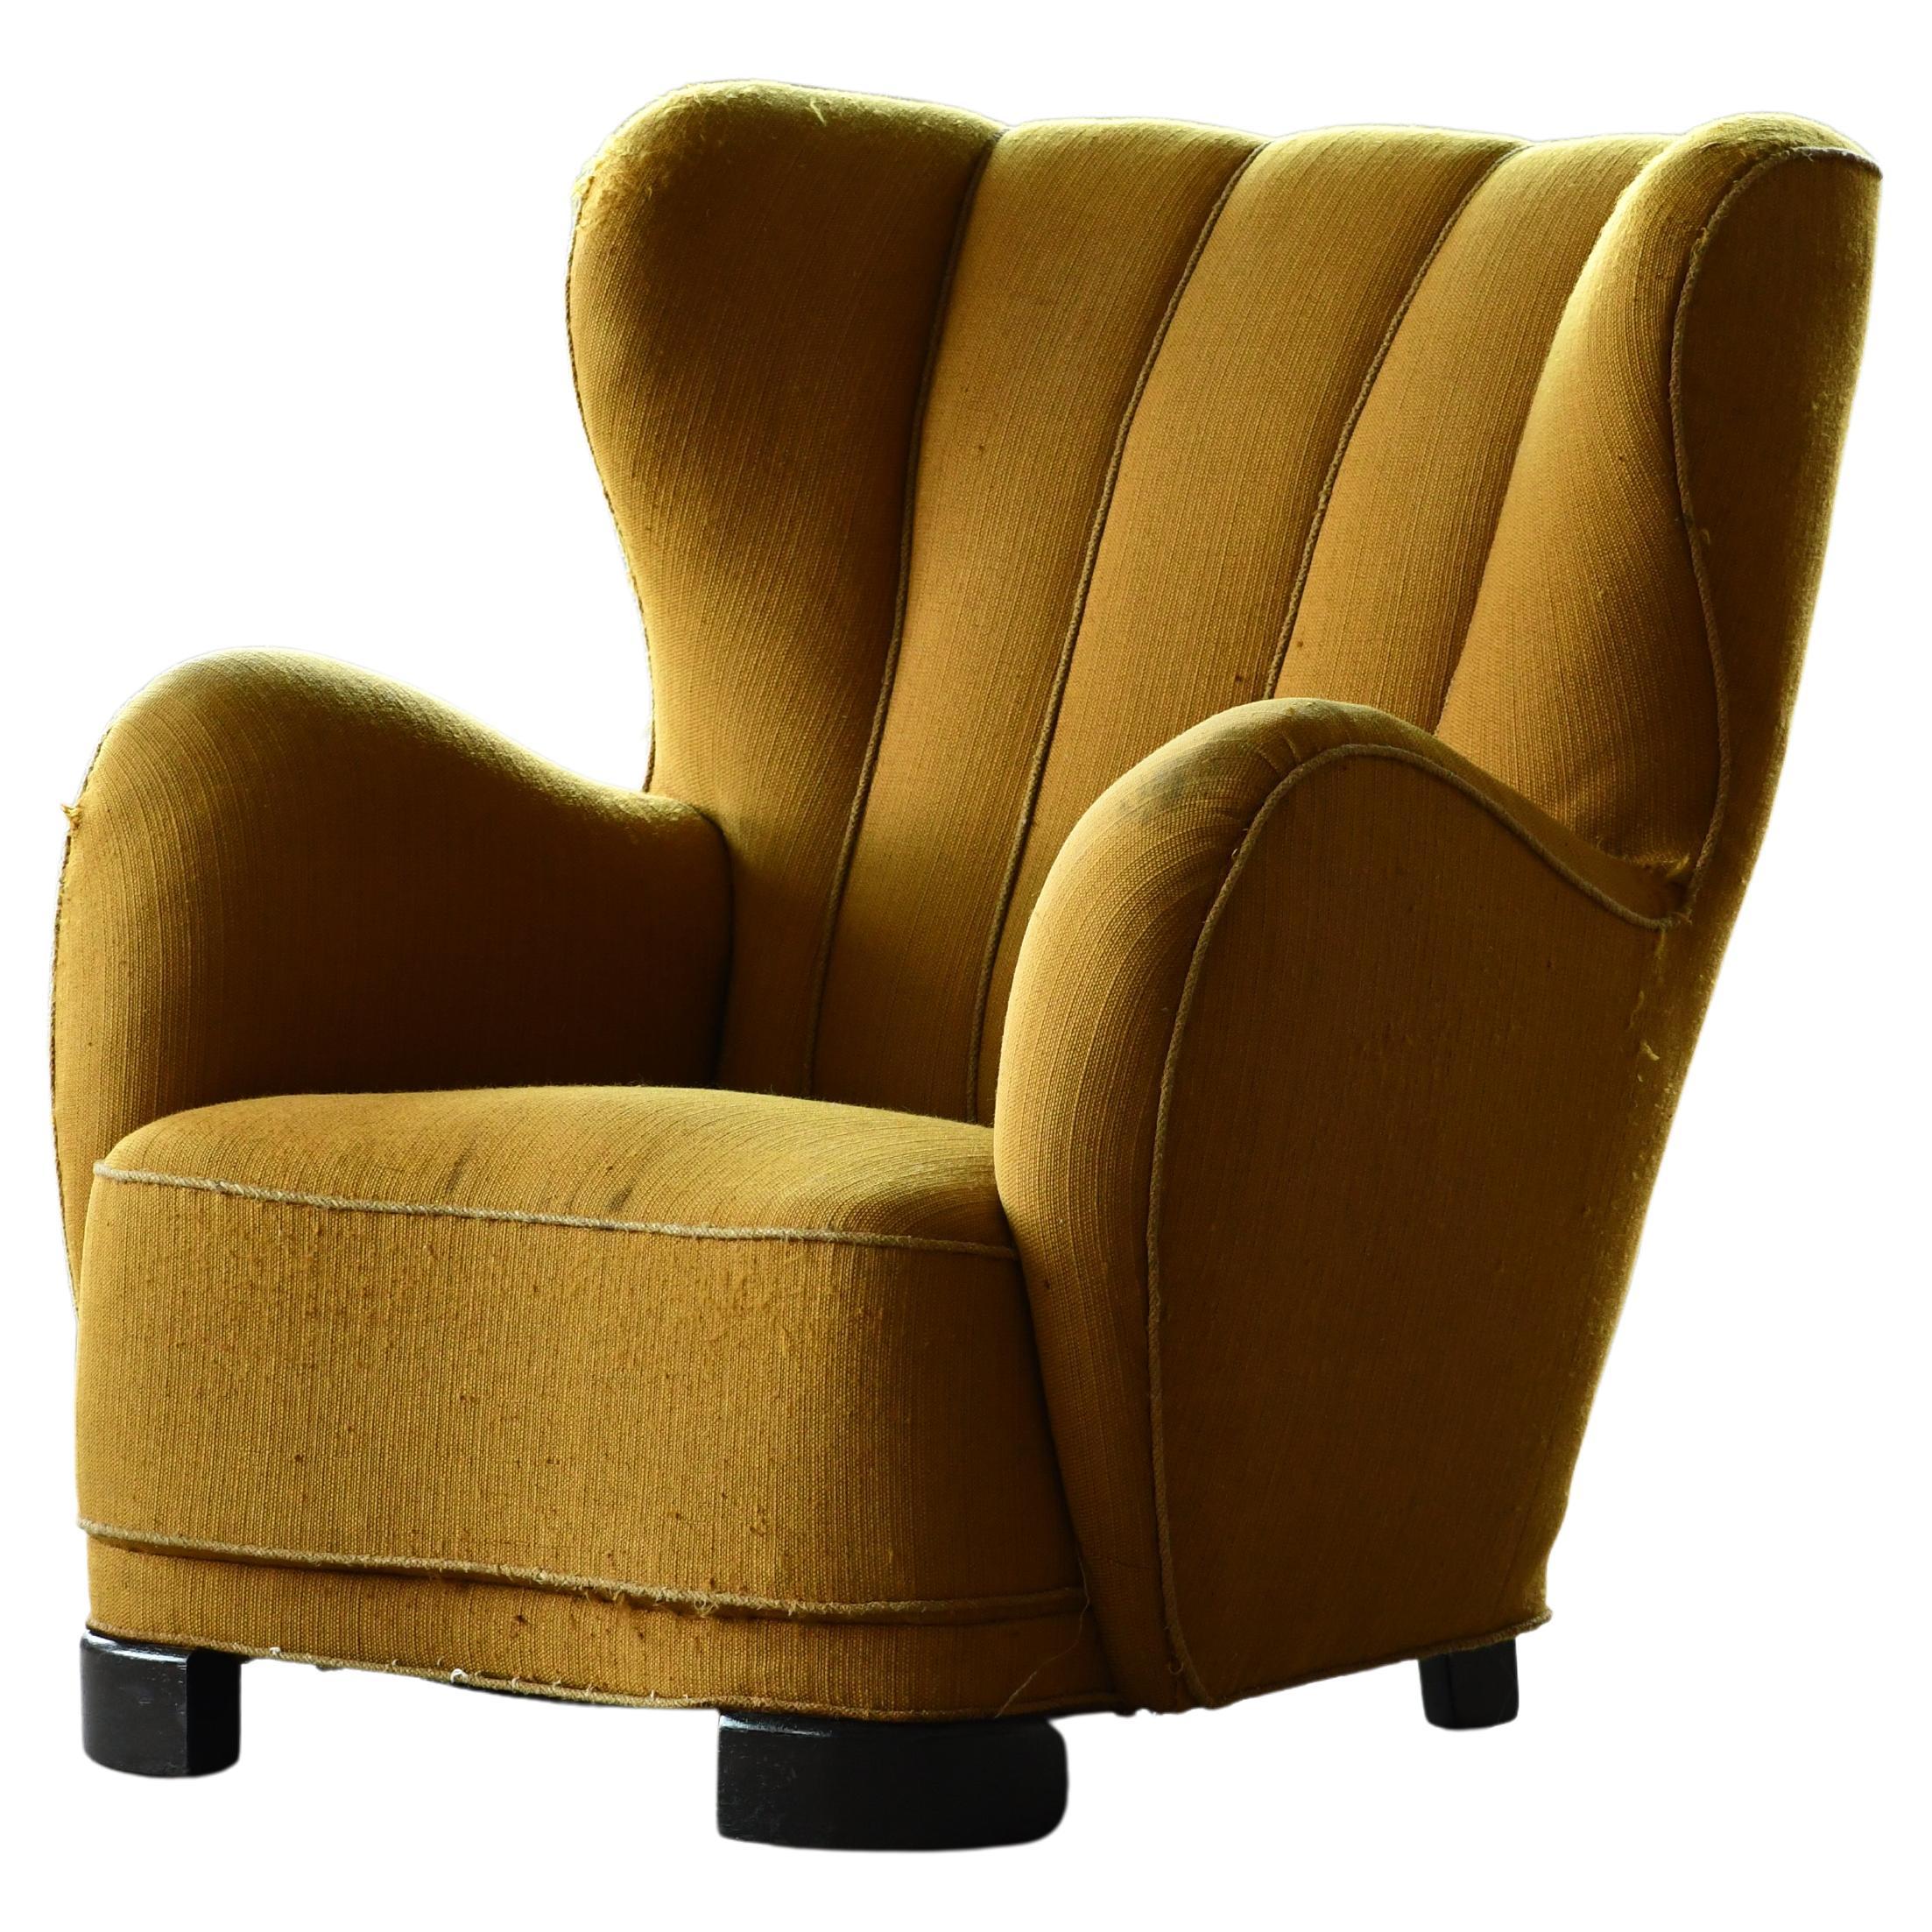 Mogens Lassen Style Danish 1940s Channel Back Lounge Chair in Wool Fabric